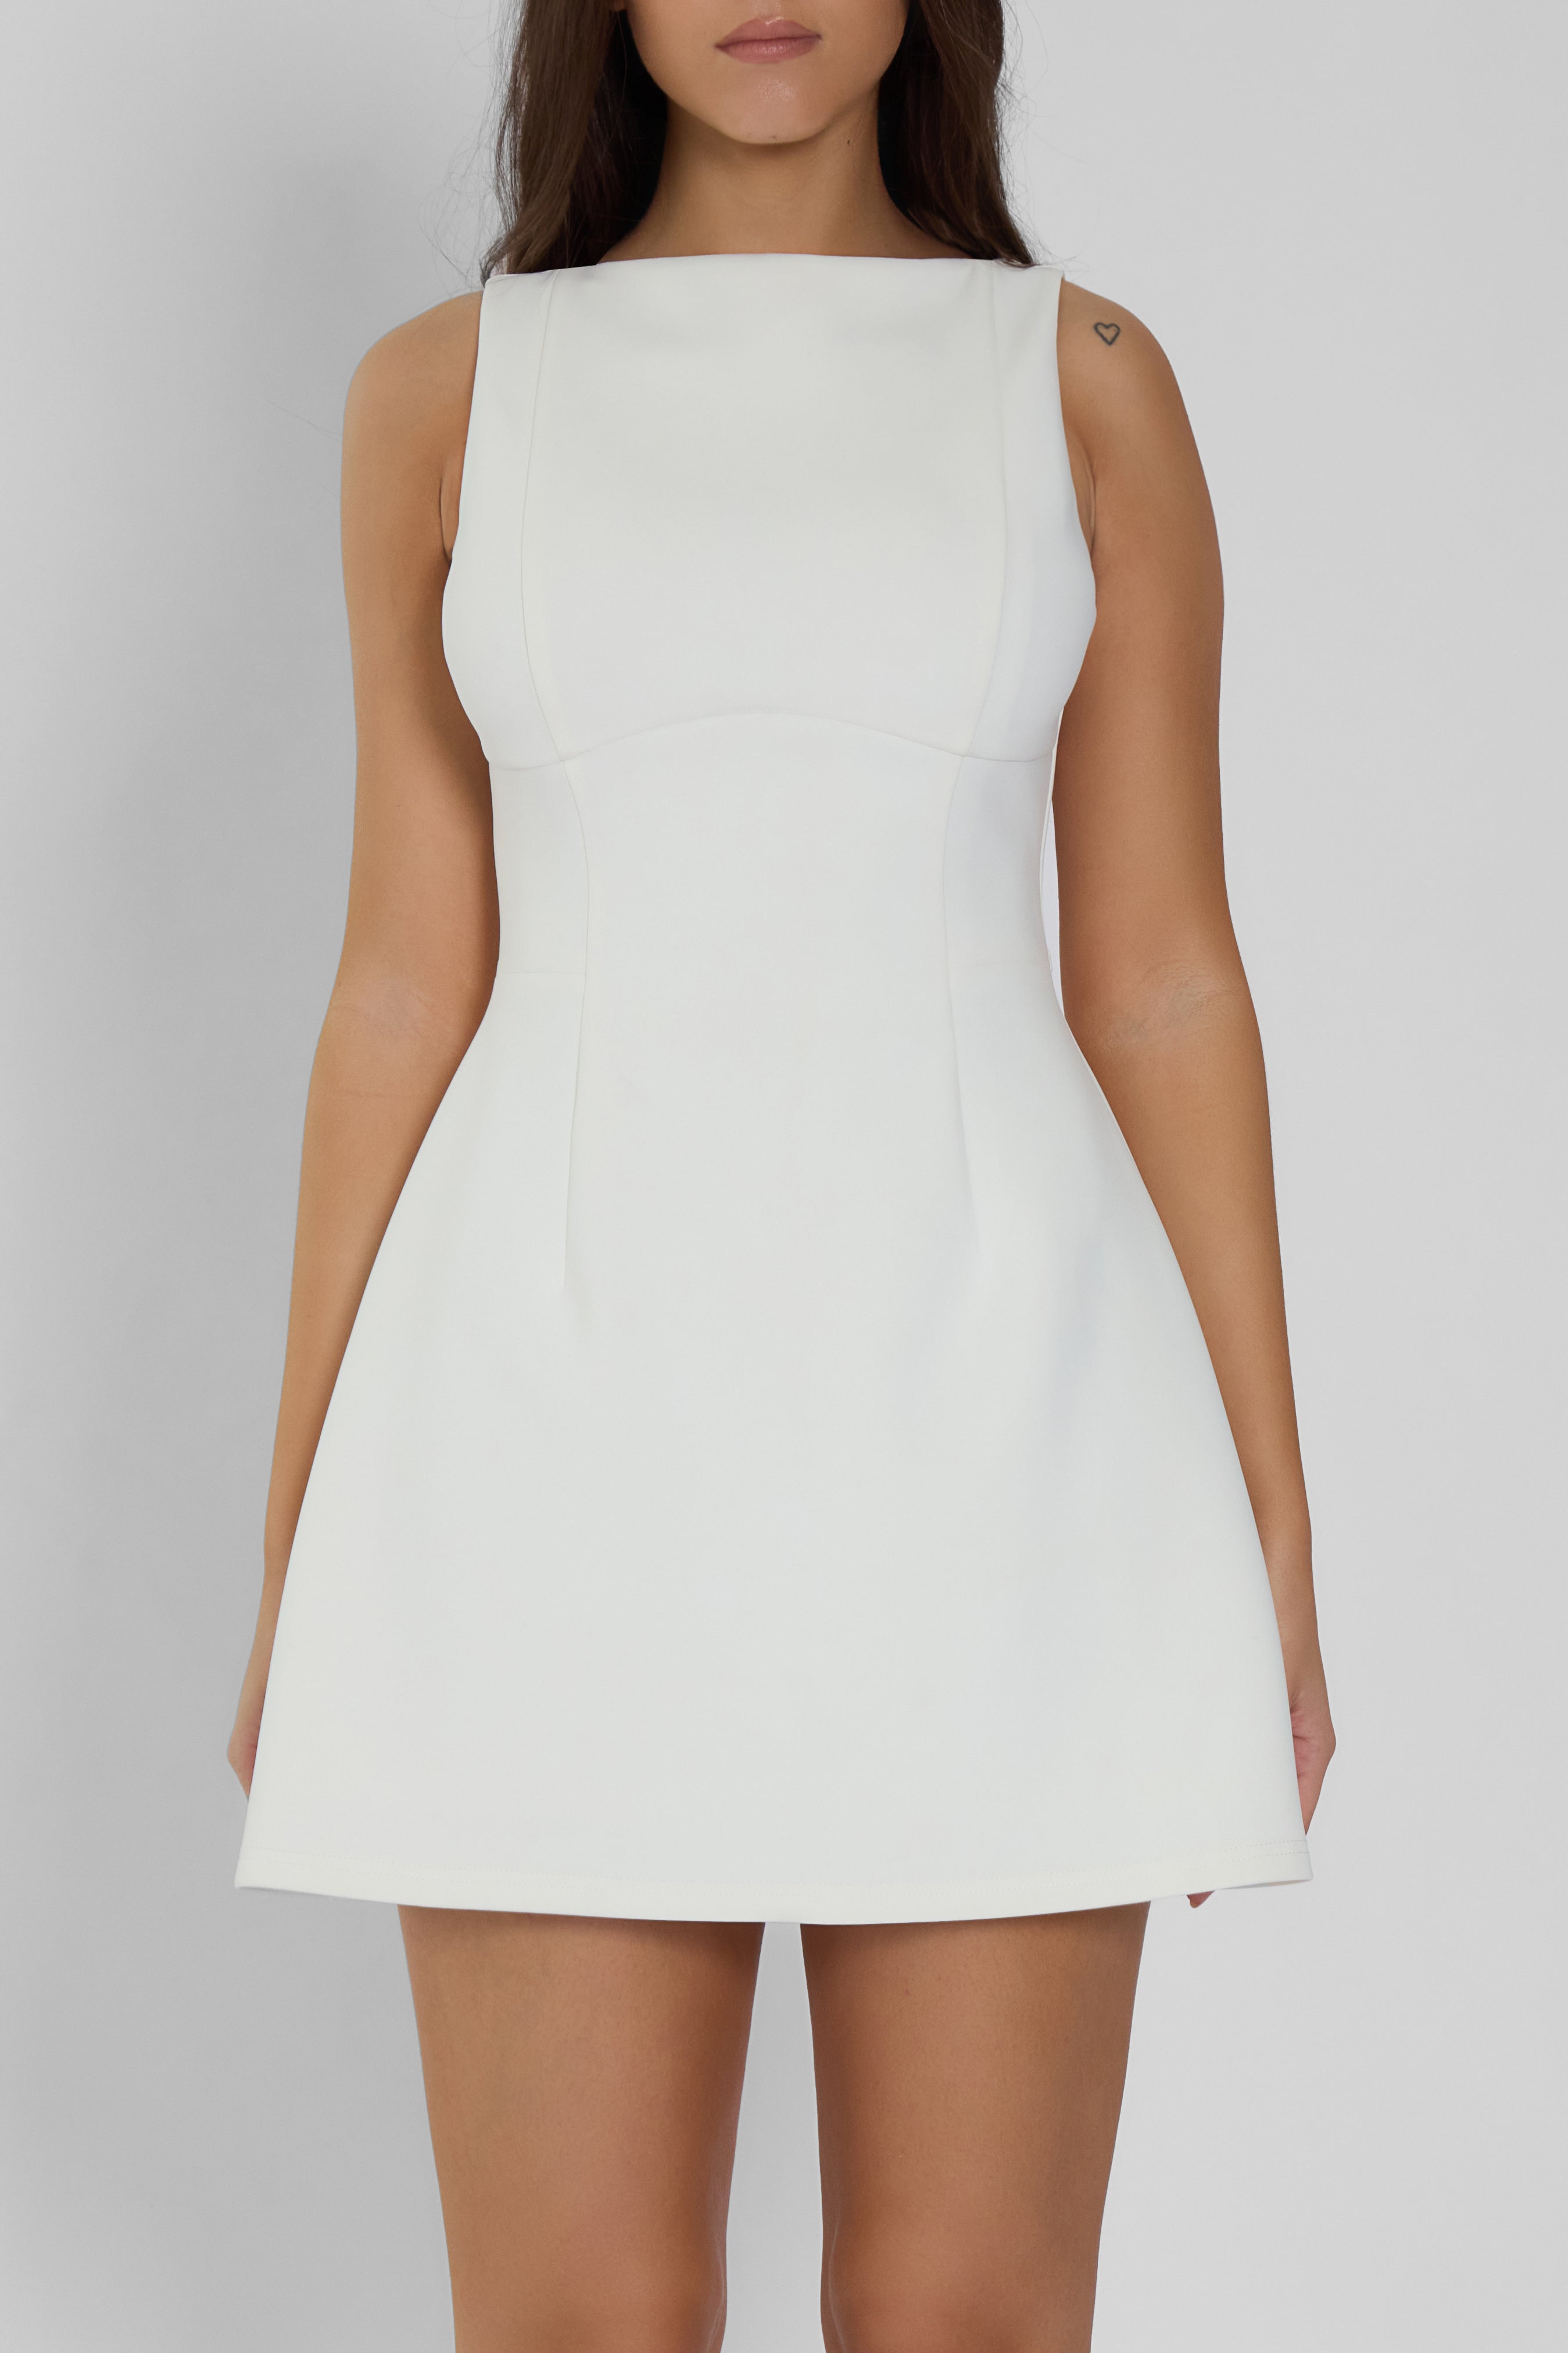 Estelle Sleeveless Bustier Mini Dress - White.